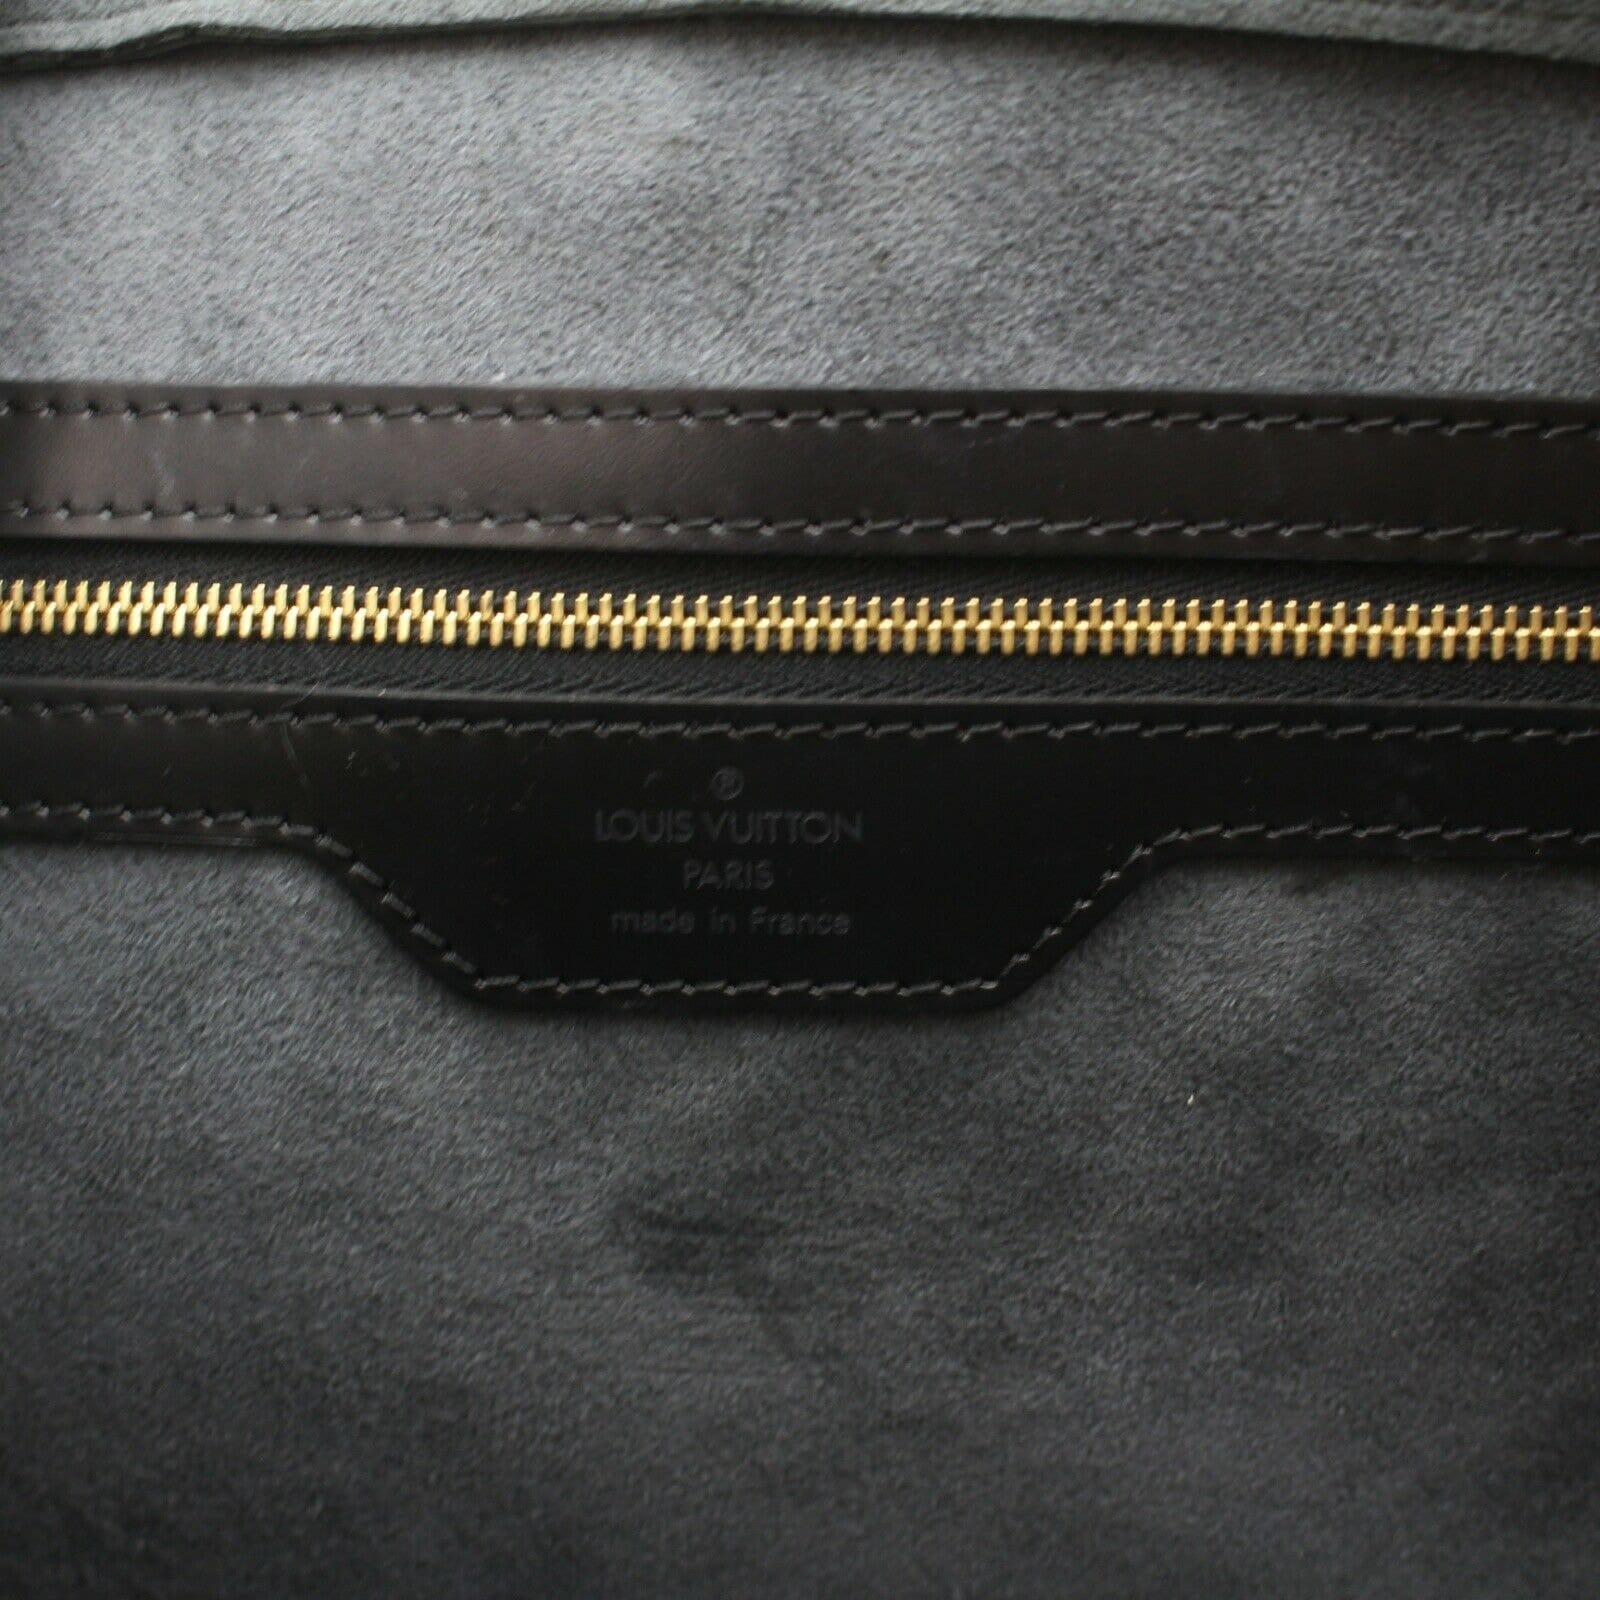 Louis Vuitton Vintage - Epi Sorbonne Bag - Black - Leather and Epi